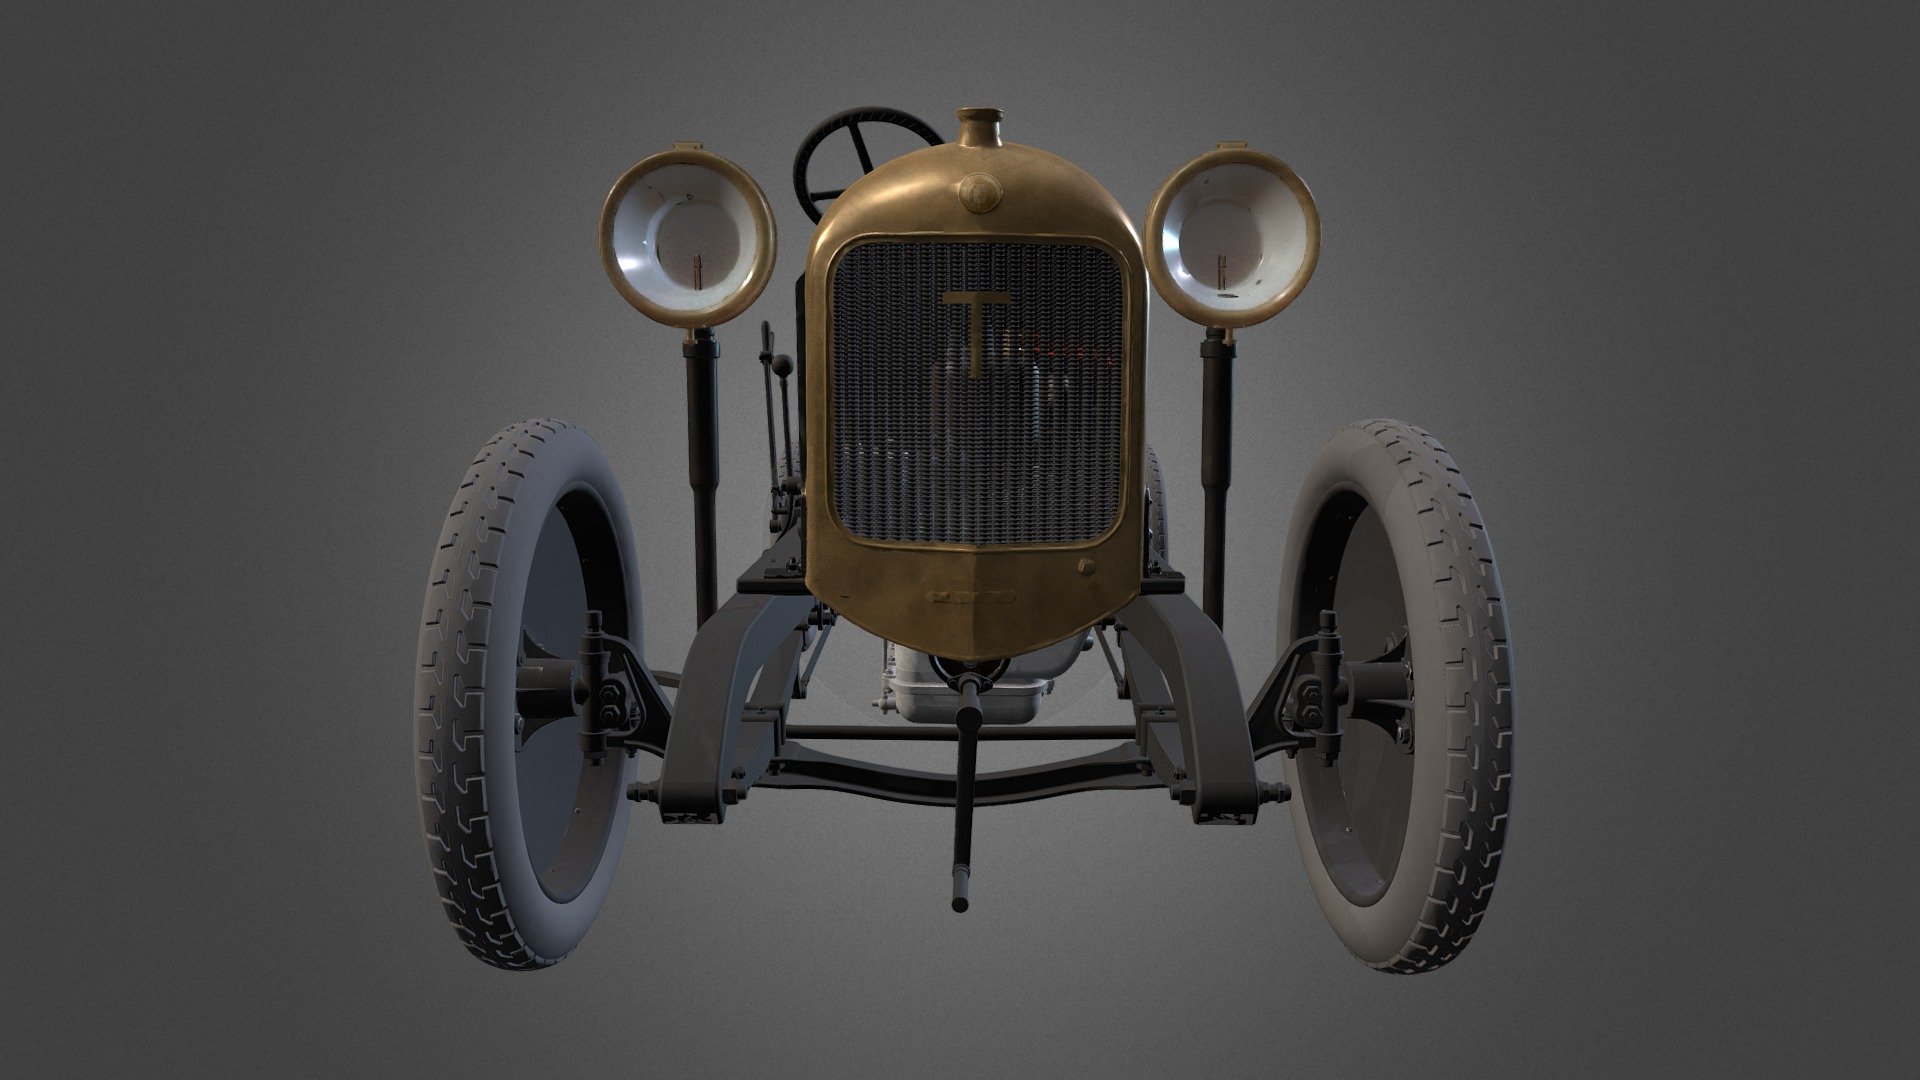 En 1913, Adrien Morin créé l’établissement de construction automobiles le Garage Moderne à Thouars (Deux-Sèvres). Pendant 12 ans, il tente percer dans le secteur avec ses automobiles TUAR. Il ne trouvera jamais vraiment le succès commercial, malgré des victoires en course automobiles devant Bugatti. En sept ans, seules 150 voitures furent fabriquées.

Ce châssis automobile est un châssis de Tuar B3 type B3-12HP datant de 1920. Il devait être carrossé en torpédo 4 places et équipé d’un moteur Chapuis-Dornier 12HP (à 1400 tours par minute). Récupéré sous forme d’épave, patiemment restauré, c’est l’unique exemplaire conservé à ce jour ; neufs furent produits. 

N° d’inv. : 2013.1.1 issu des collections du musée Henri Barré de Thouars (79 - France). Voir la fiche dans notre base de données en ligne.

Modélisation après numérisation réalisée par l'entreprise Digiscan 3D - Châssis de voiture TUAR - Download Free 3D model by Alienor.org, Conseil des musées (@alienor.org) 3d model